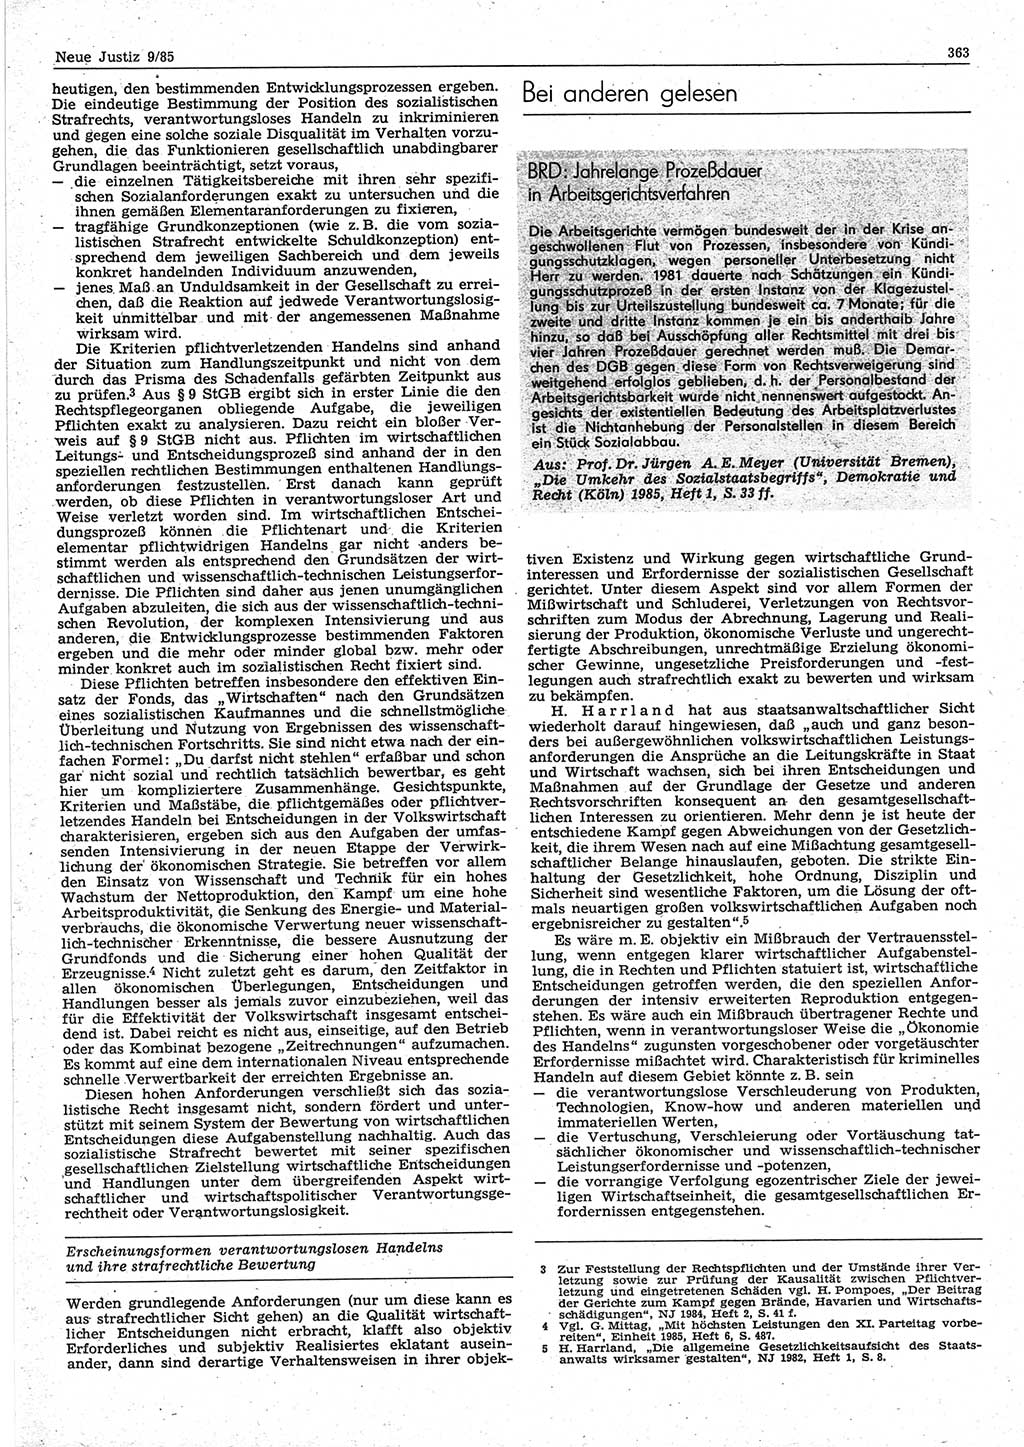 Neue Justiz (NJ), Zeitschrift für sozialistisches Recht und Gesetzlichkeit [Deutsche Demokratische Republik (DDR)], 39. Jahrgang 1985, Seite 363 (NJ DDR 1985, S. 363)